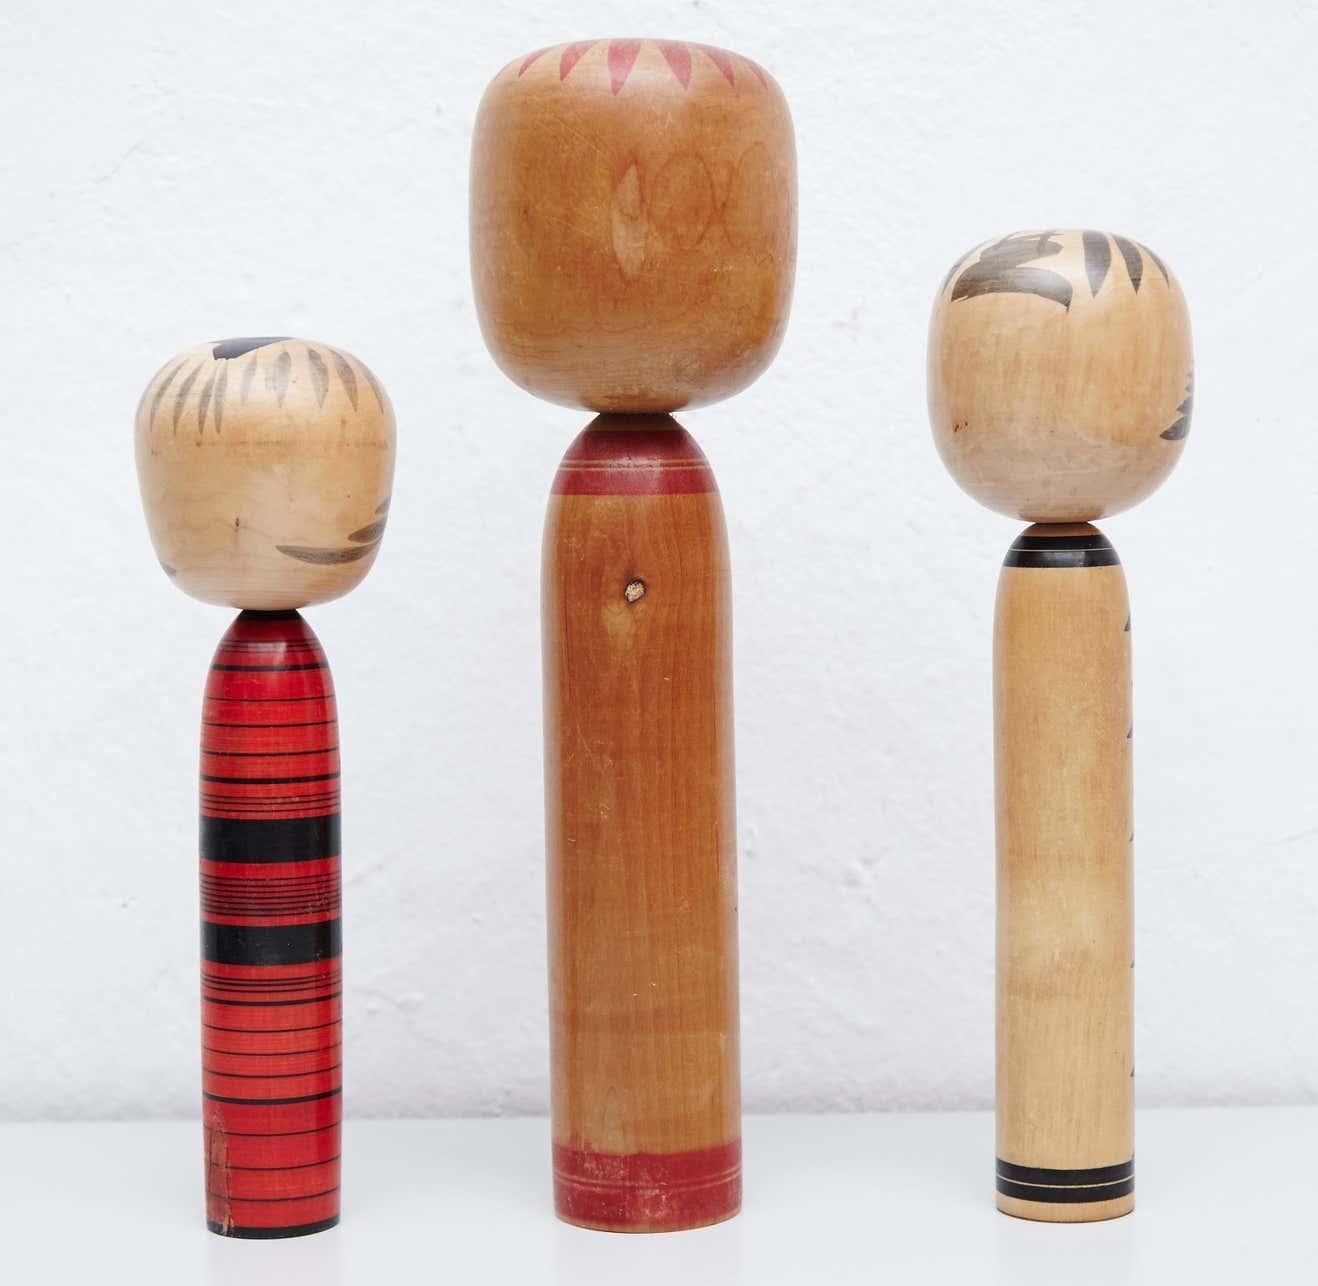 Japanische Puppen, Kokeshi genannt, aus dem frühen 20. Jahrhundert.
Provenienz aus dem nördlichen Japan.
Satz von 3.

Maßnahmen: 

30 x 8 cm
38 x 8 cm
36 x 10,5 cm


Handgefertigt von japanischen Kunsthandwerkern aus Holz. Sie haben einen